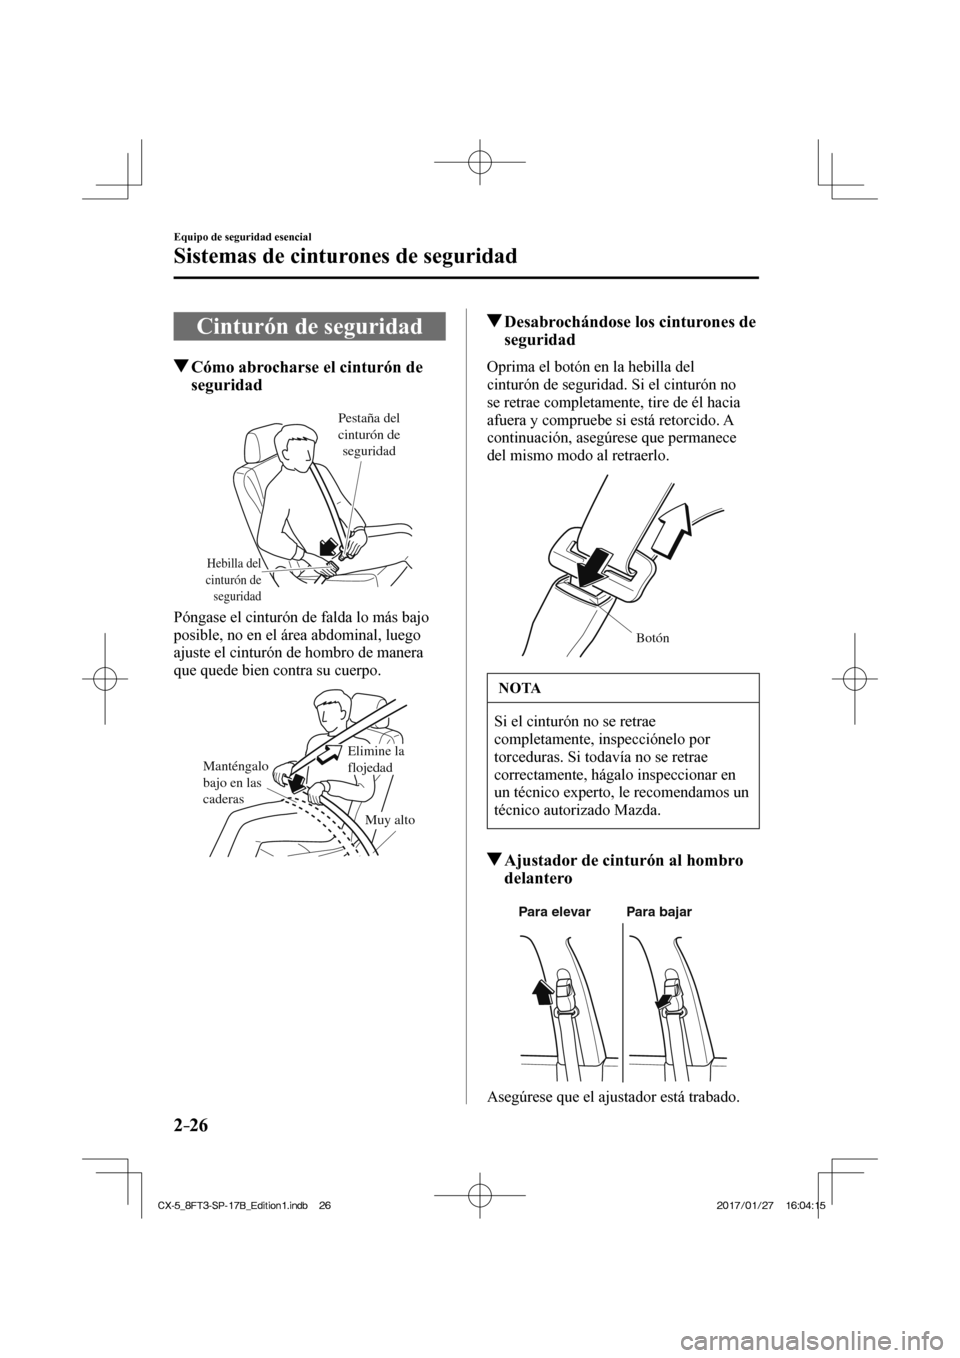 MAZDA MODEL CX-5 2018  Manual del propietario (in Spanish) 2–26
Equipo de seguridad esencial
Sistemas de cinturones de seguridad
 Cinturón de seguridad
                   Cómo abrocharse el cinturón de seguridad
   
Hebilla del 
cinturón de  seguridad
P